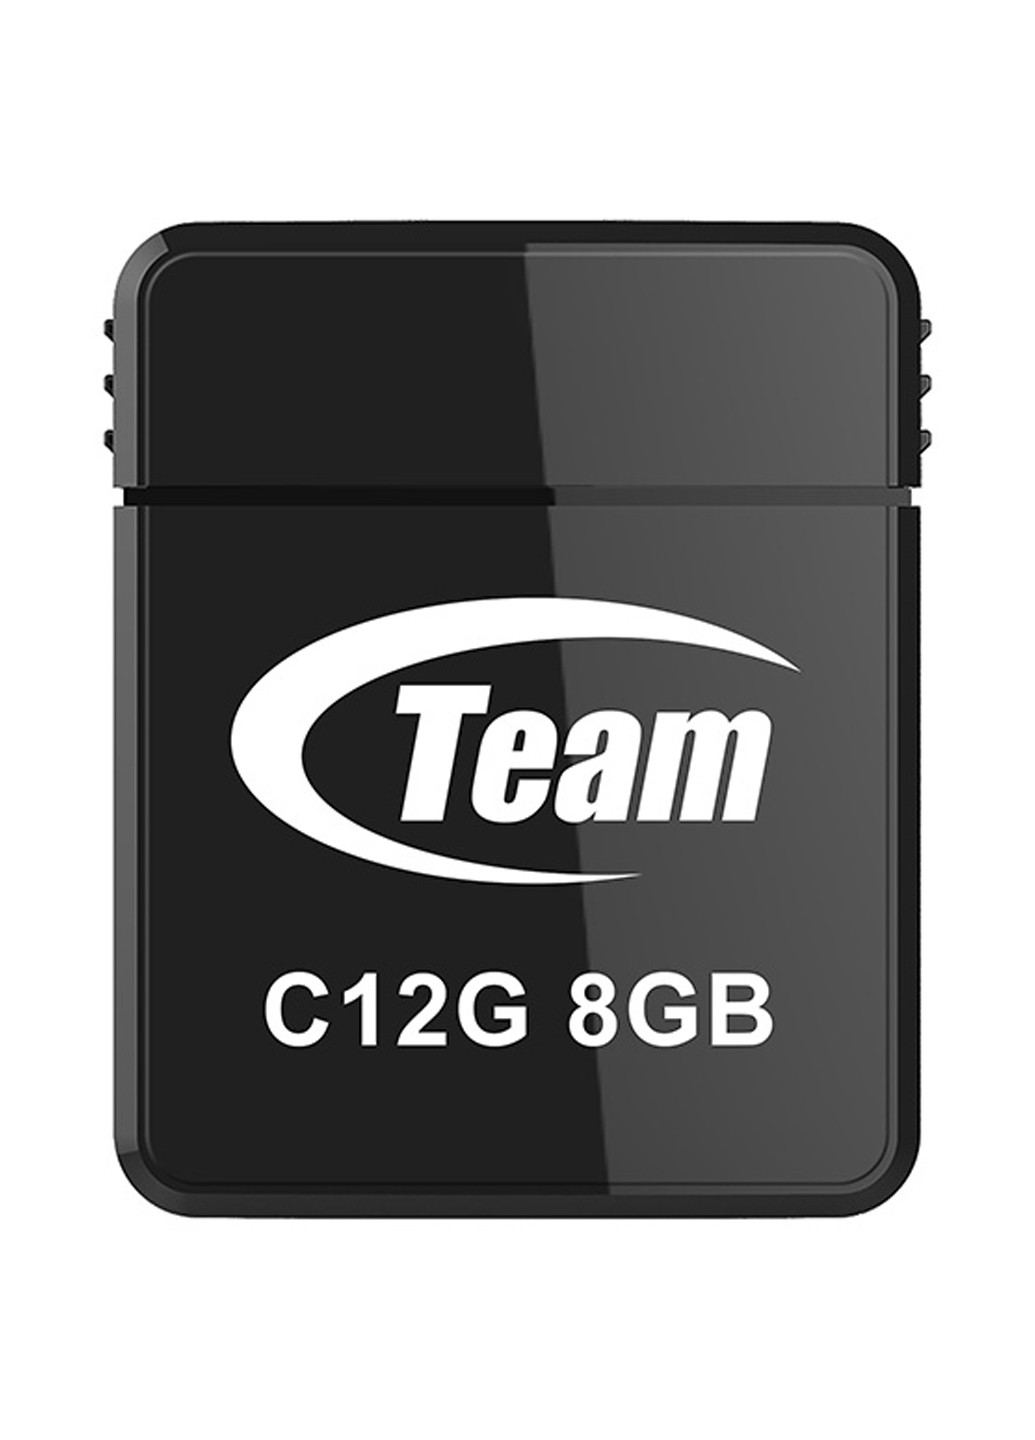 Флеш пам'ять USB C12G 8Gb Black (TC12G8GB01) Team флеш память usb team c12g 8gb black (tc12g8gb01) (134201757)